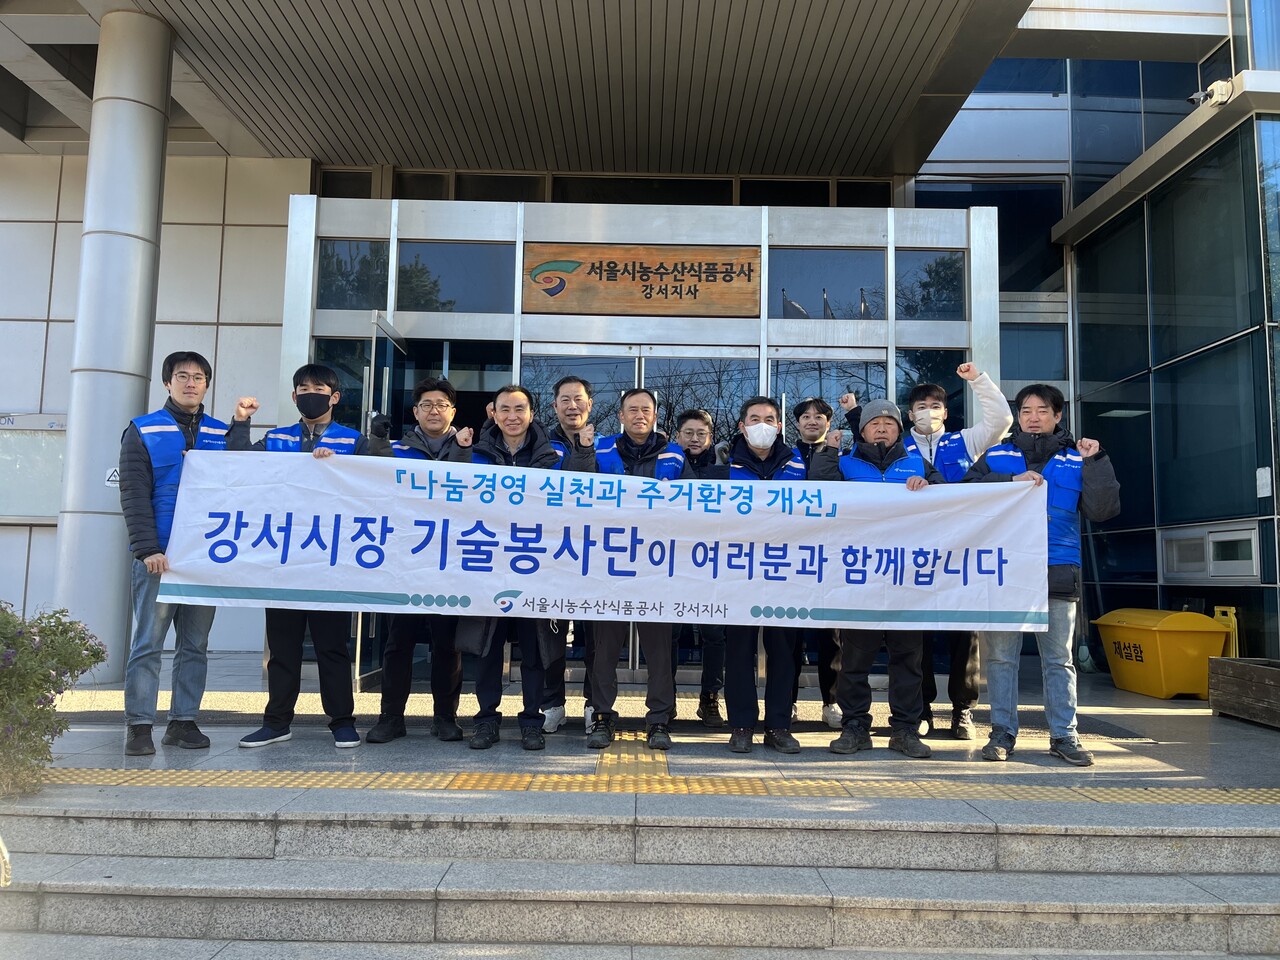 11월 30일 양천구자원봉사센터와 취약계층 5가구를 대상으로 기술봉사를 시행(서울시농수산식품공사 제공)